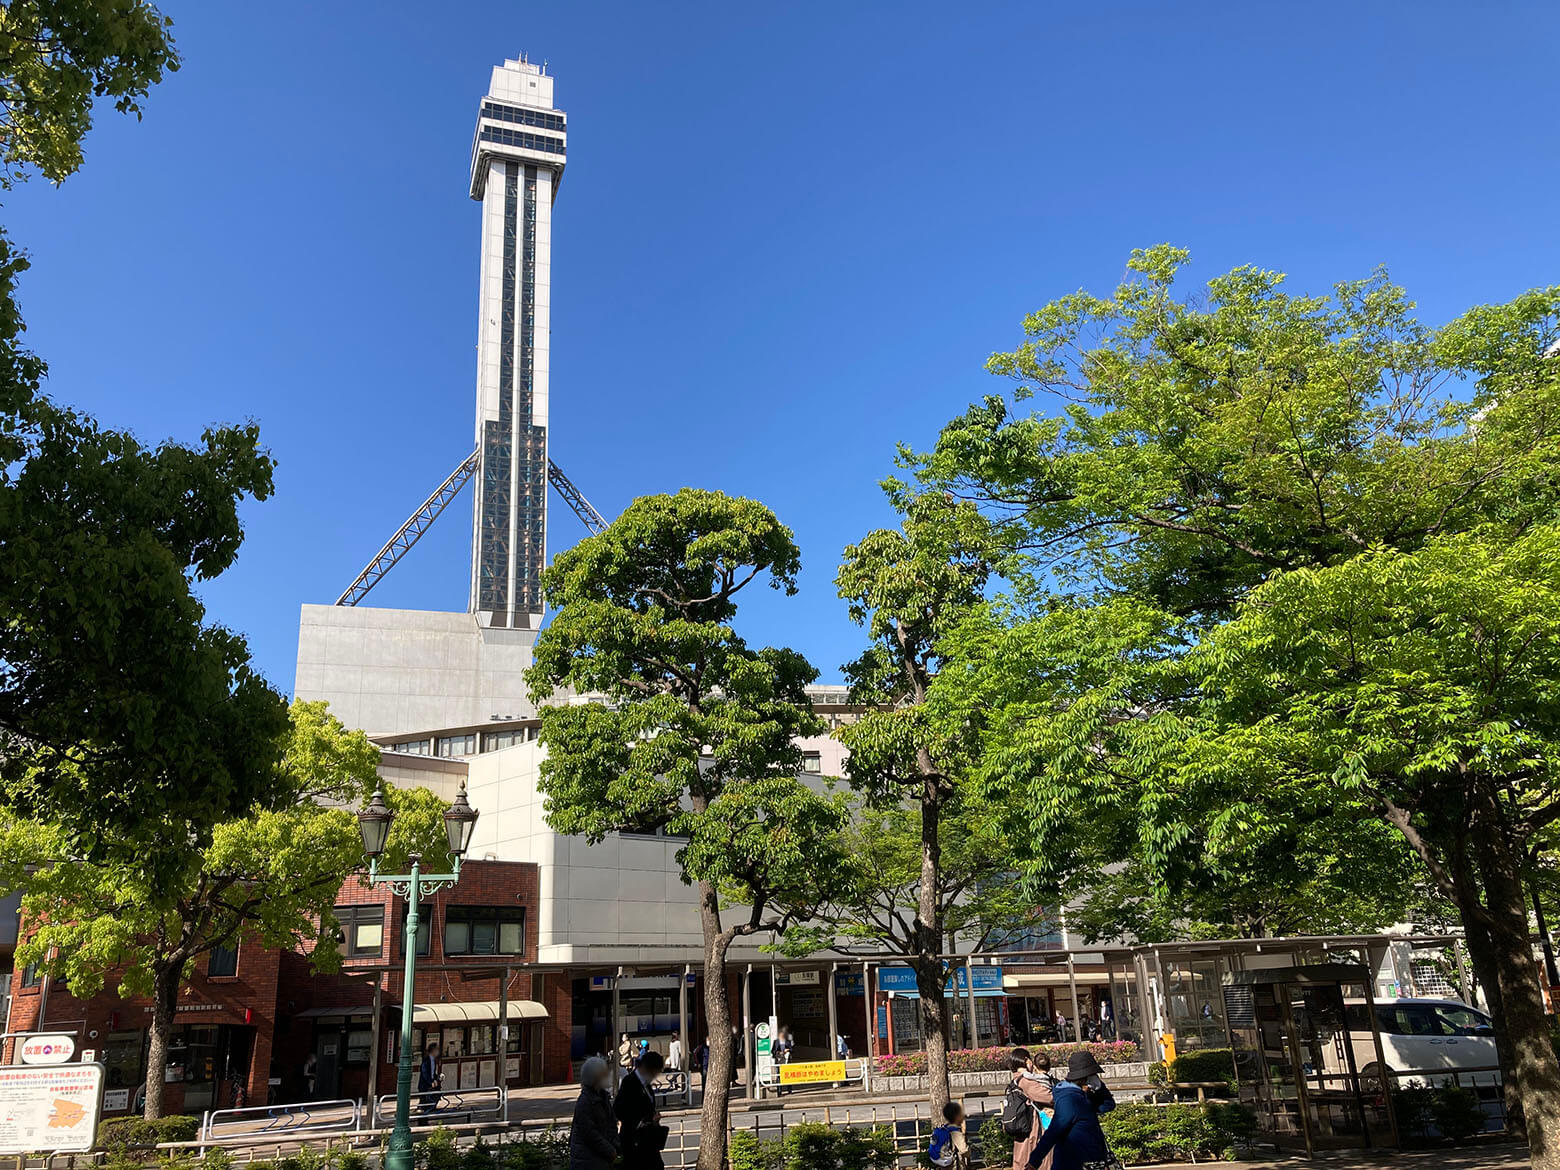 船堀駅周辺 ―東京第三のタワーと、自然と癒やしと水辺の街―